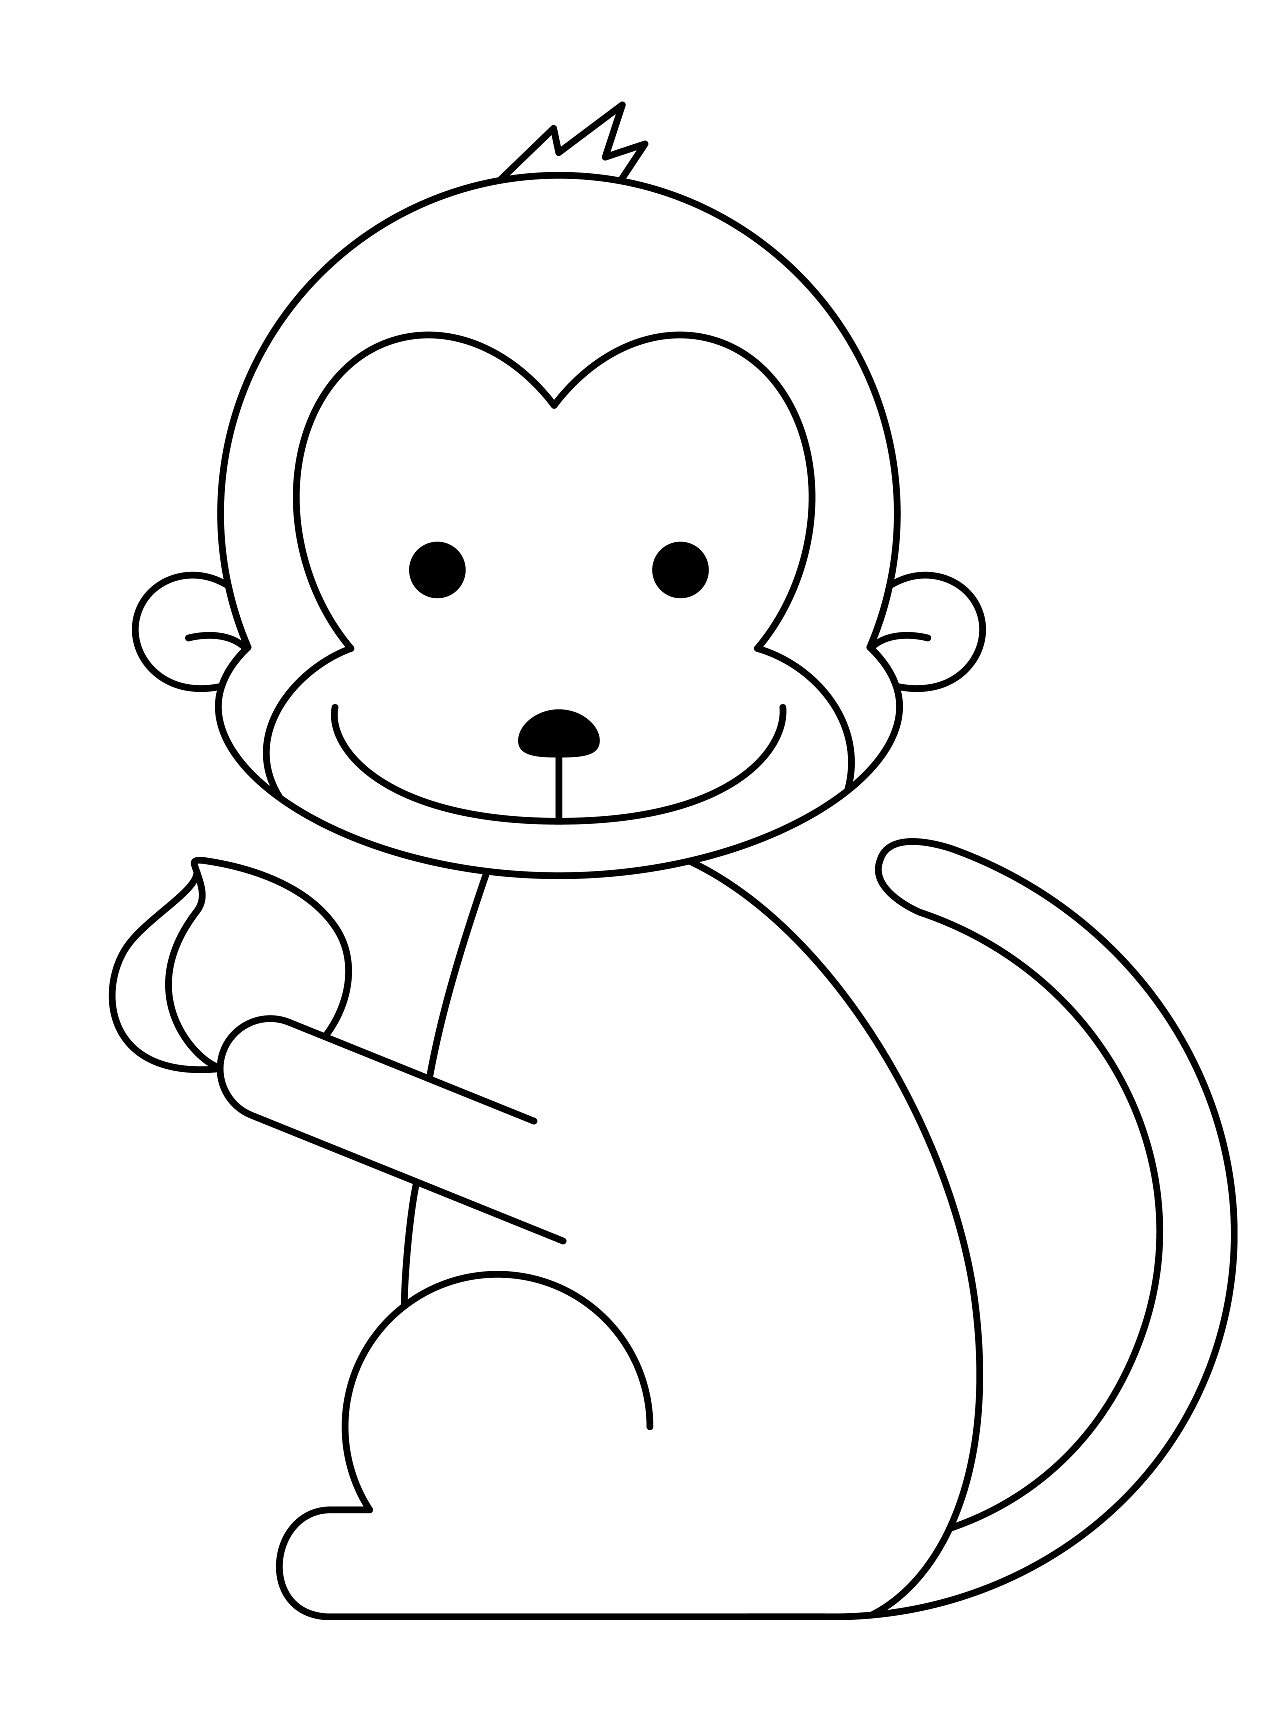 猴子简笔画图片 简单图片